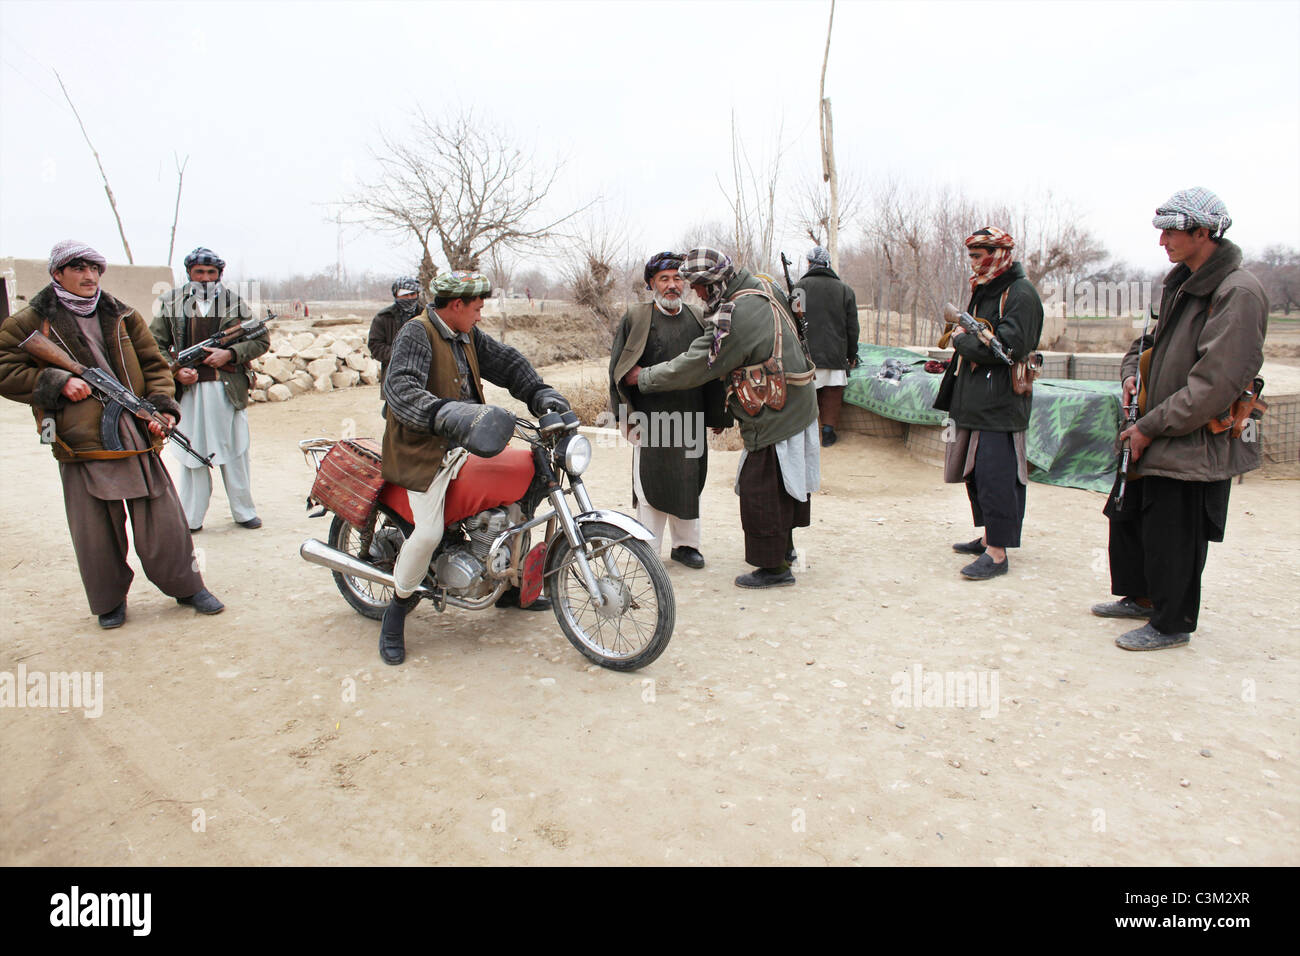 La milice, seigneur de la province de Kunduz, Afghanistan. Banque D'Images